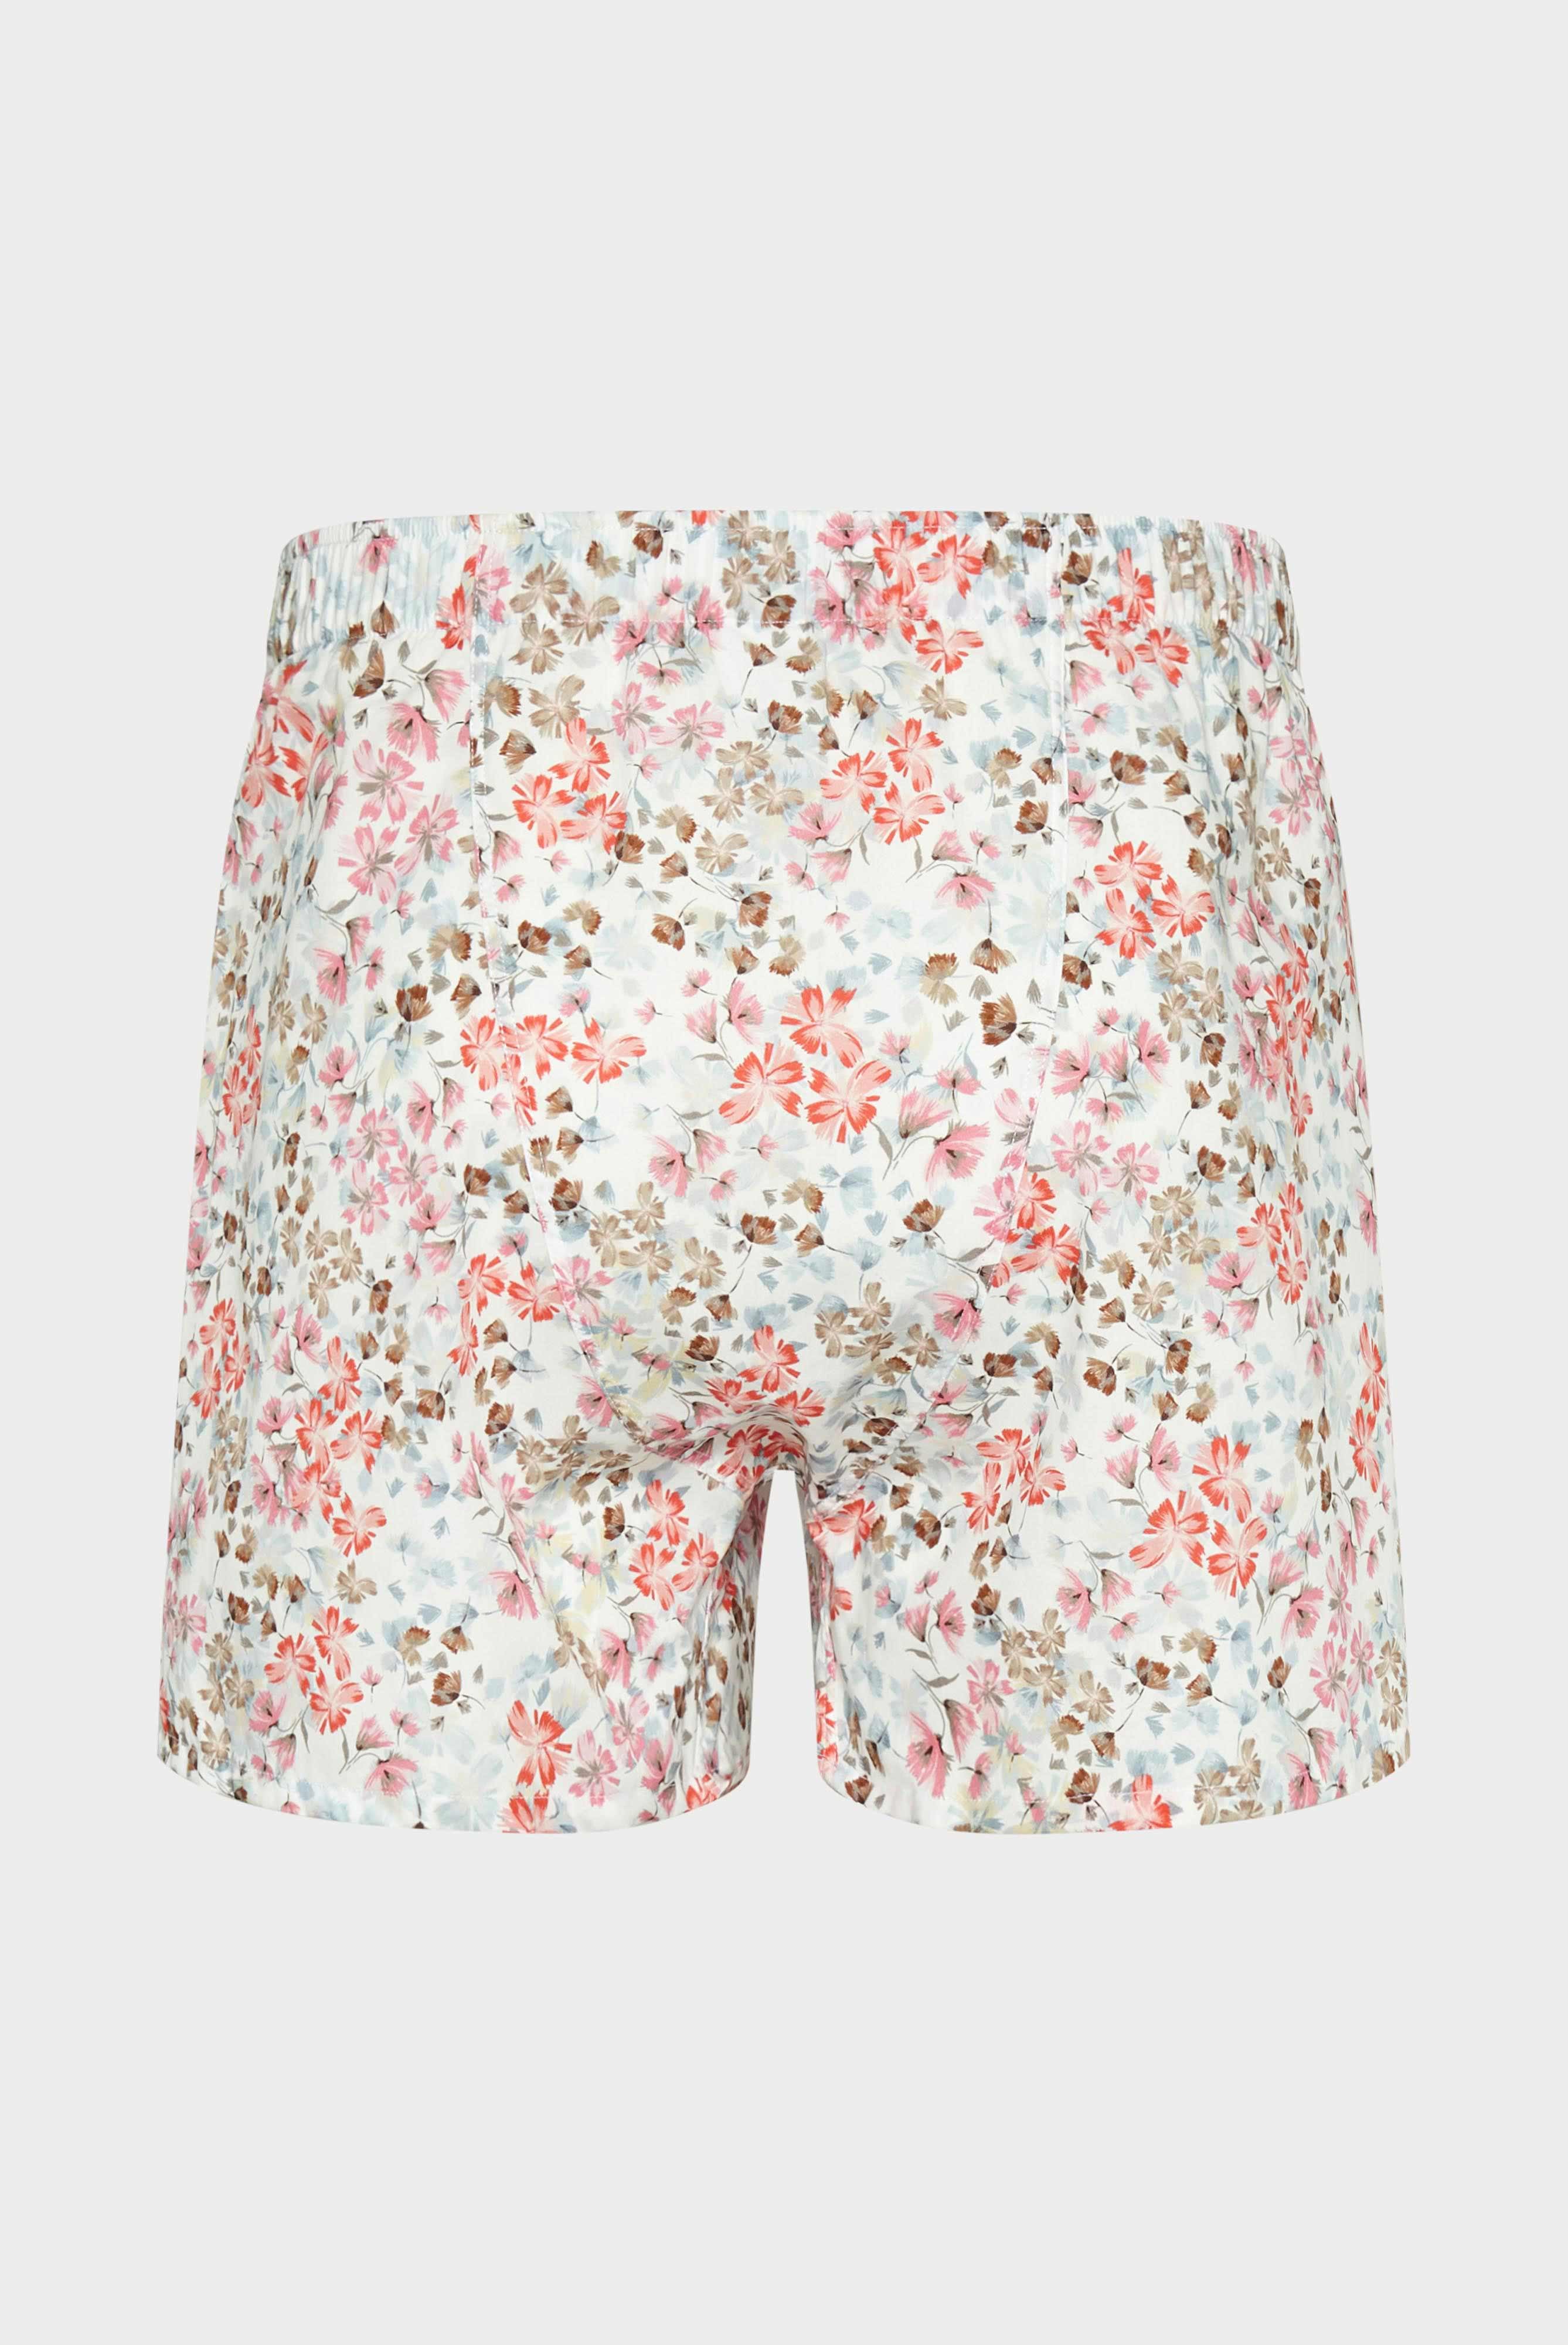 Underwear+Flower-Printed Poplin Boxer Shorts+91.1100..170252.534.48